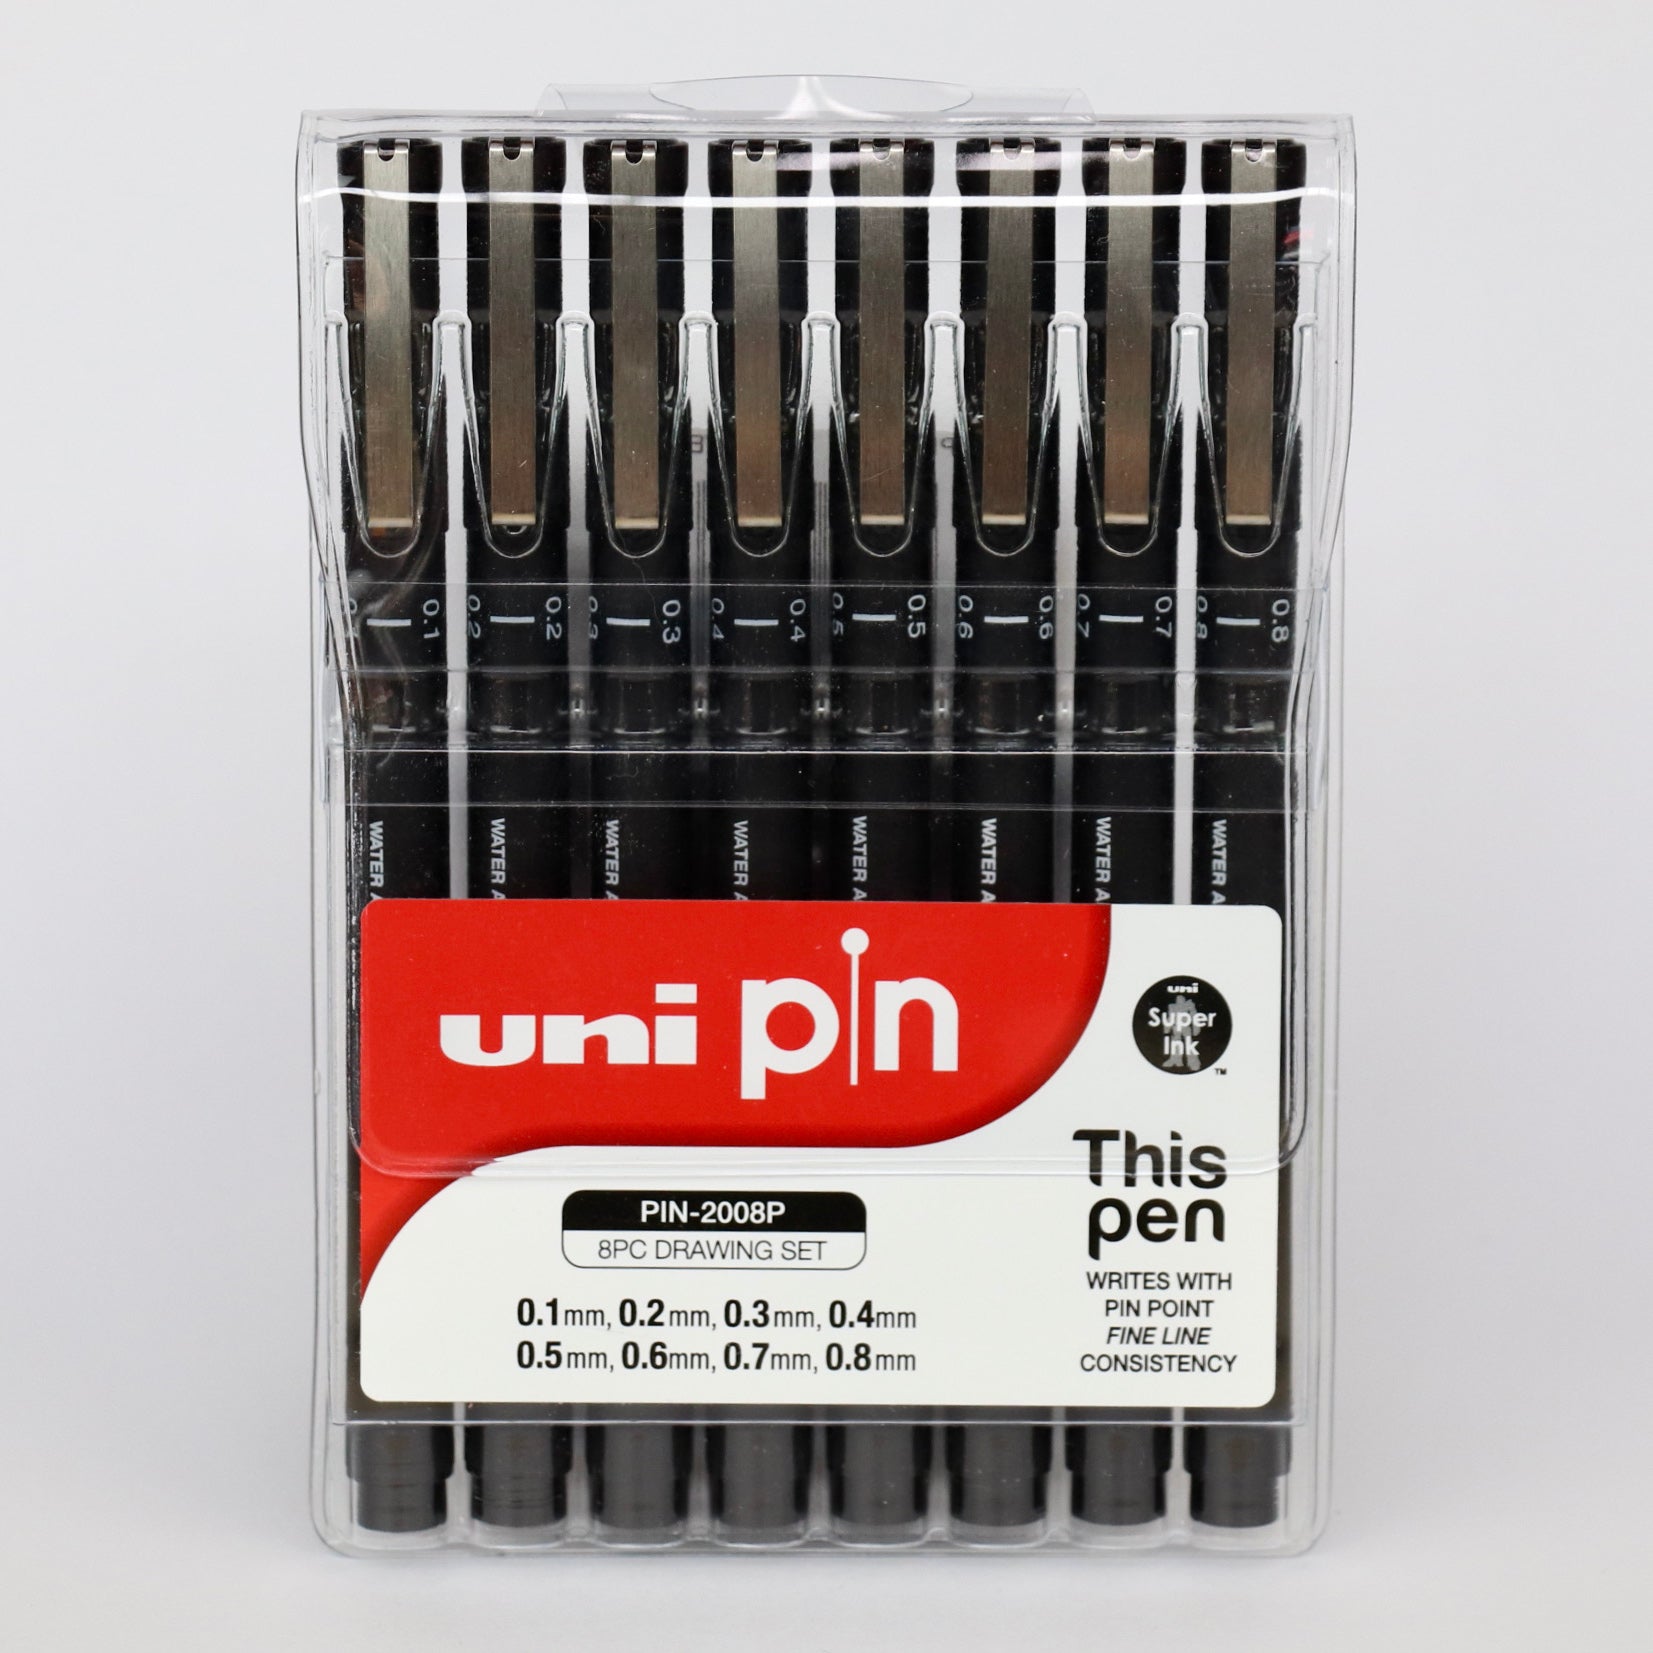 Uni pin pen set of 8